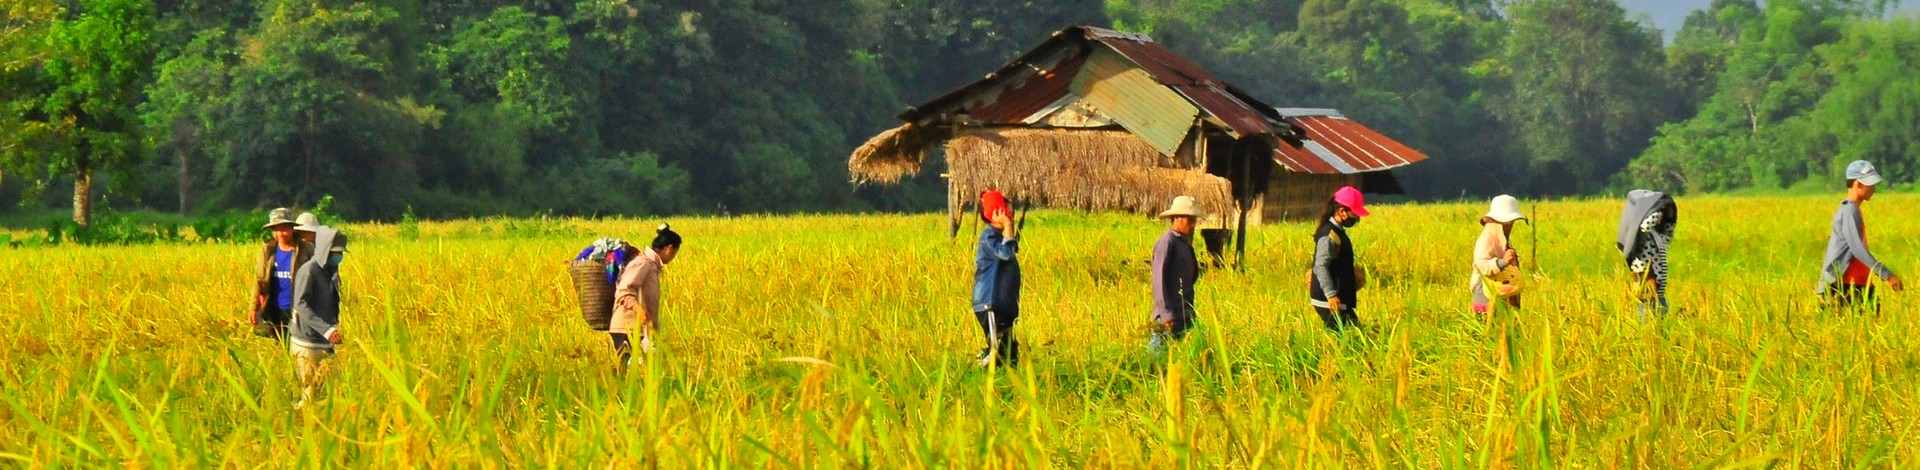 Récolte nord laos rizières verdoyantes